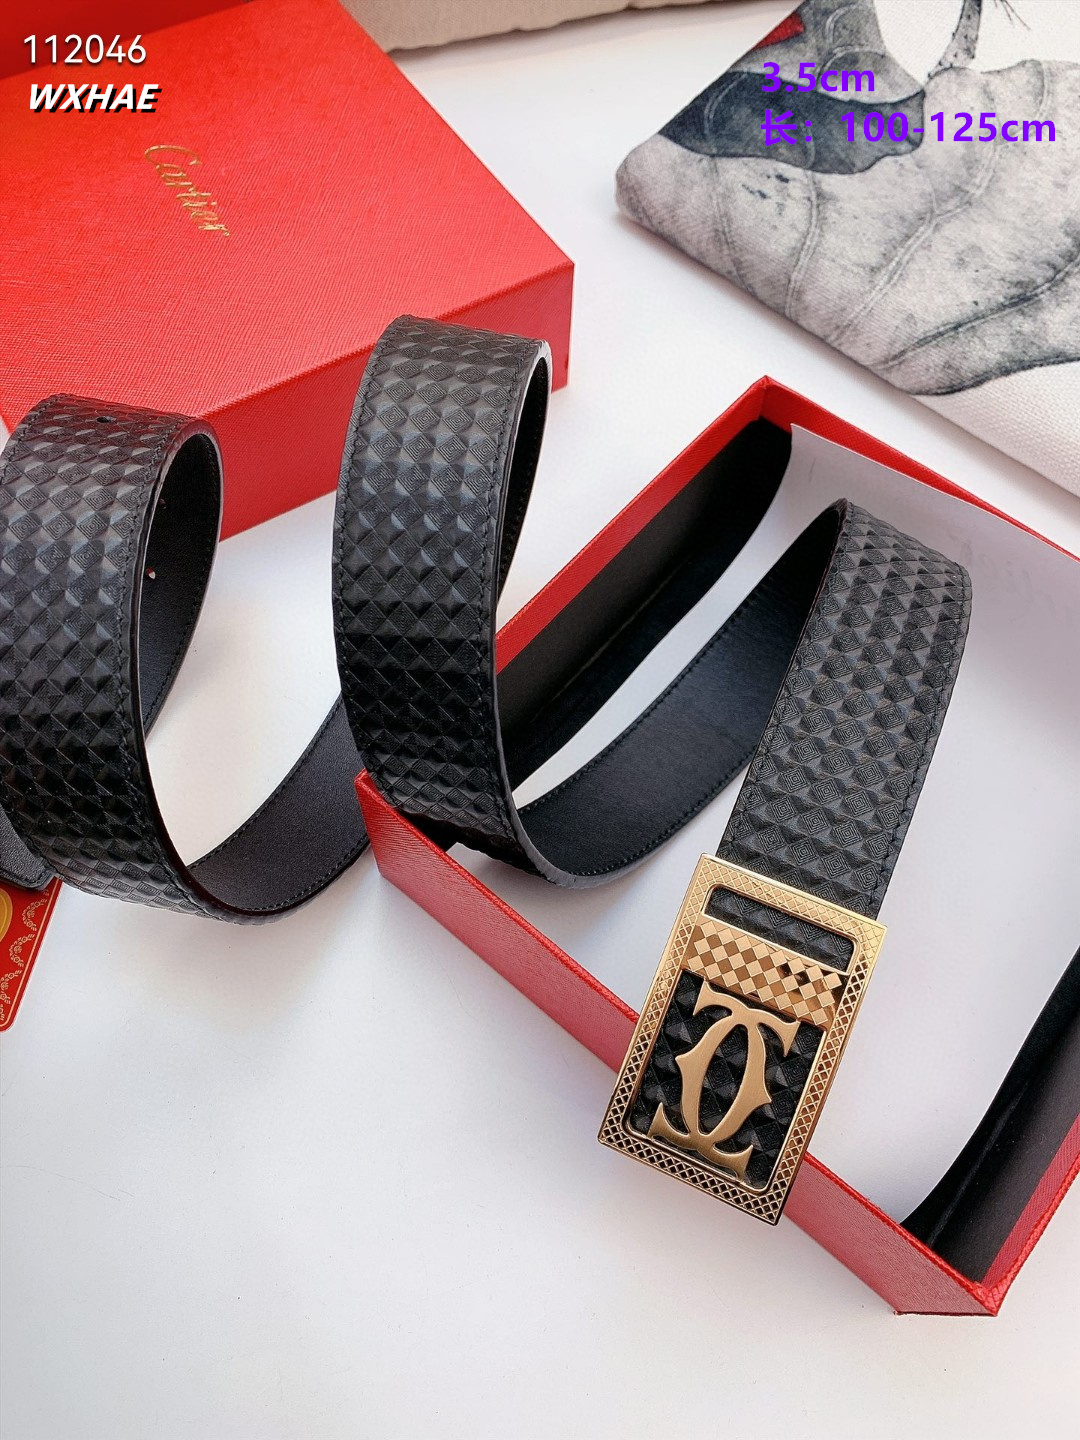 3.5 cm Width Cartier Belt  # 256516, cheap Cartier Belts, only $55!